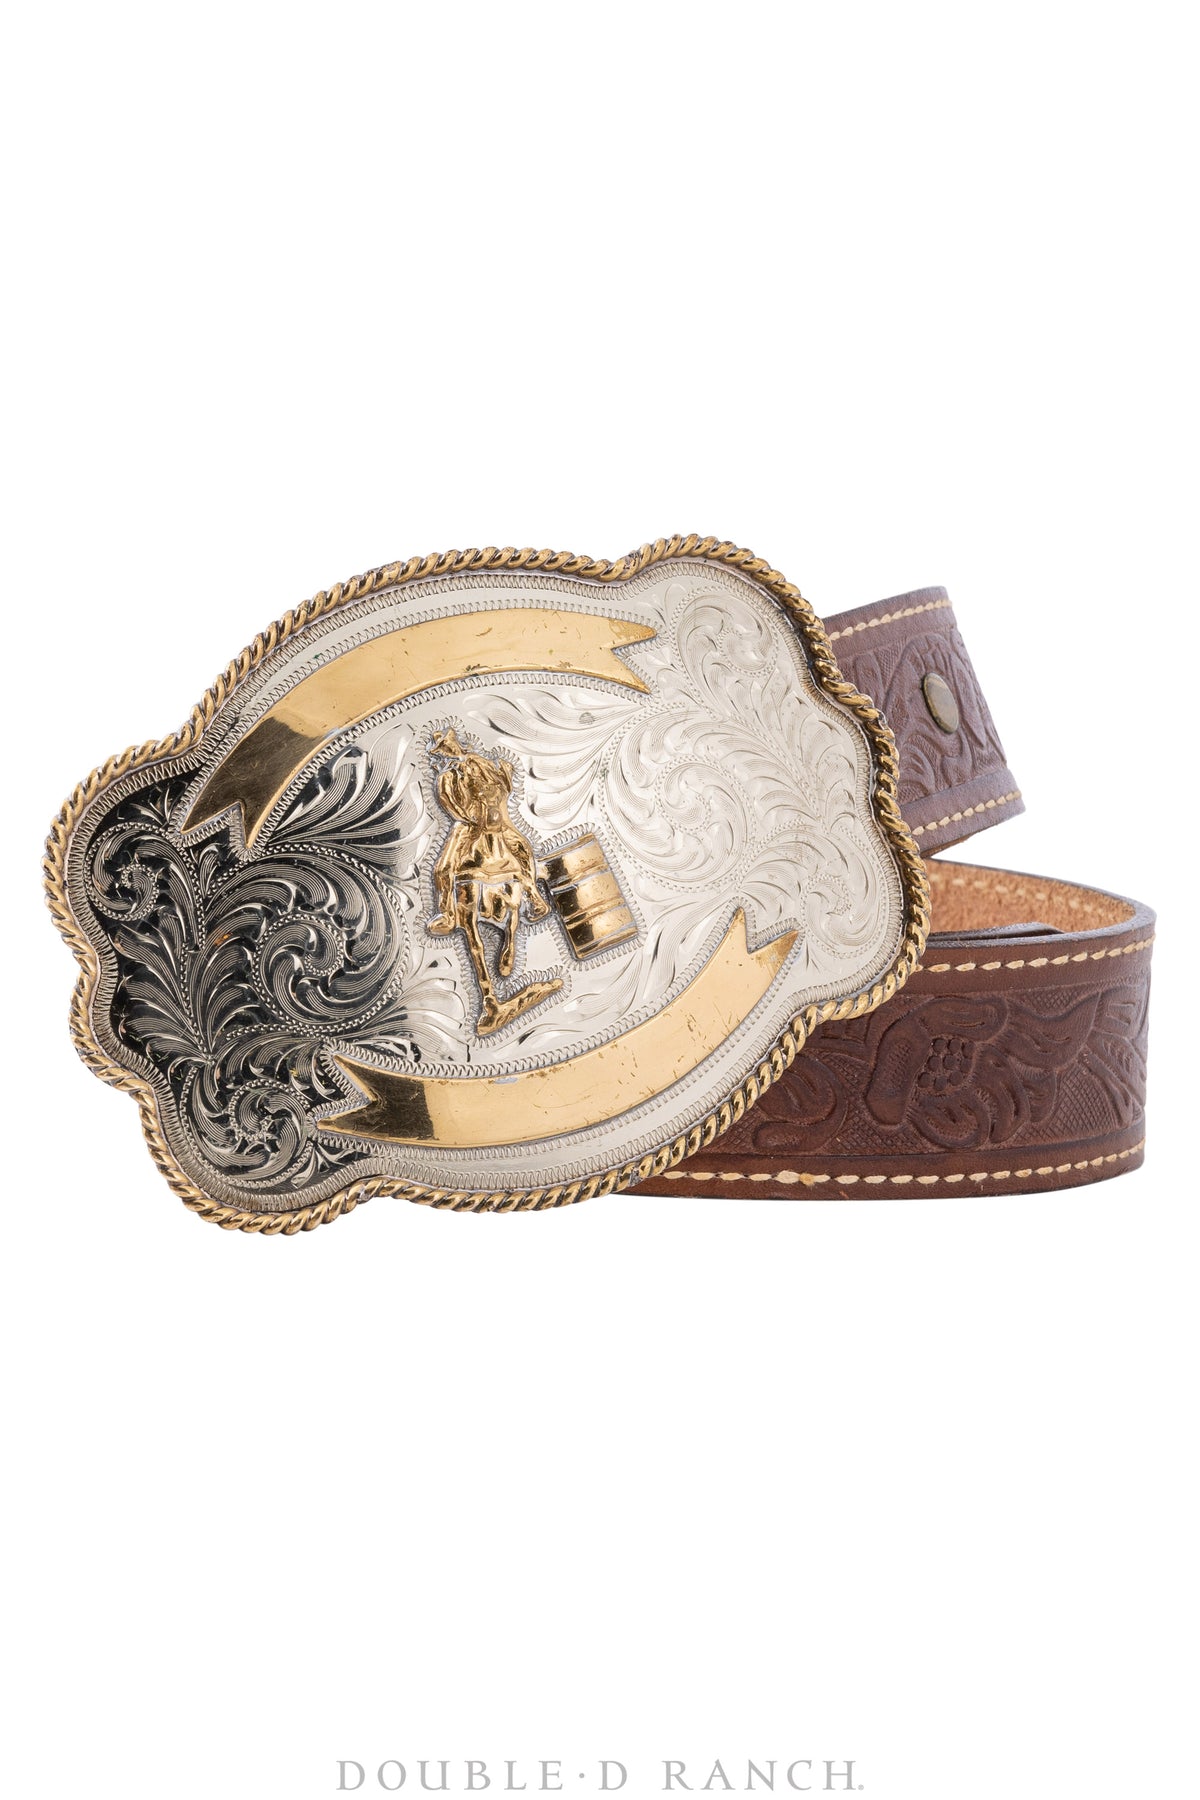 Vintage Cowboy Belt Buckle Stock Photo - Download Image Now - Belt